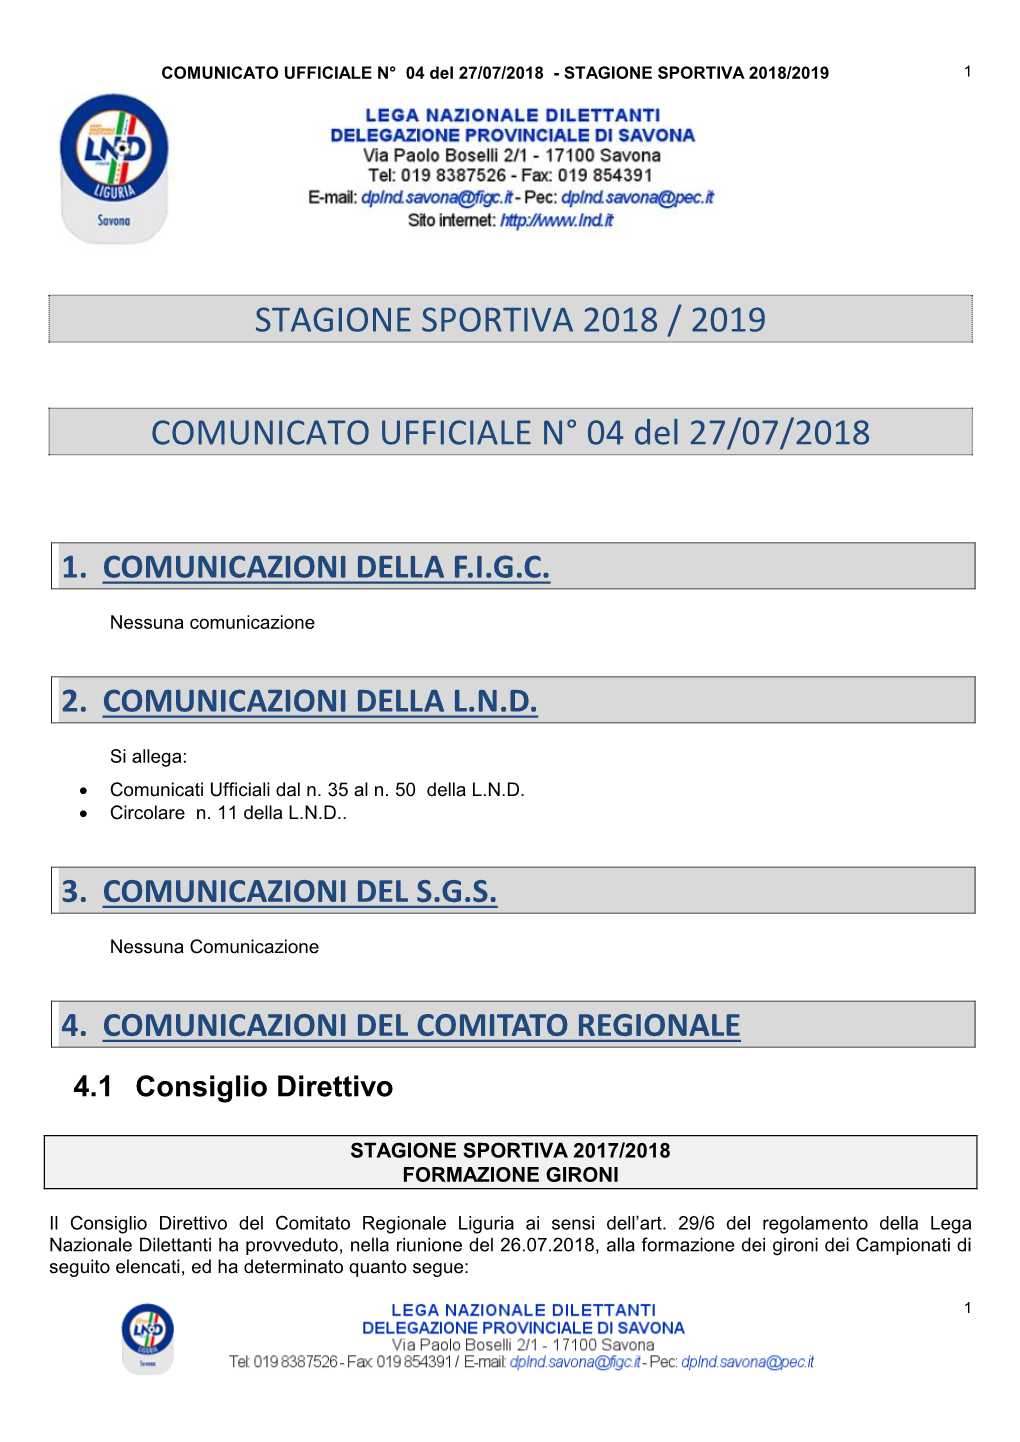 Stagione Sportiva 2018 / 2019 Comunicato Ufficiale N° 04